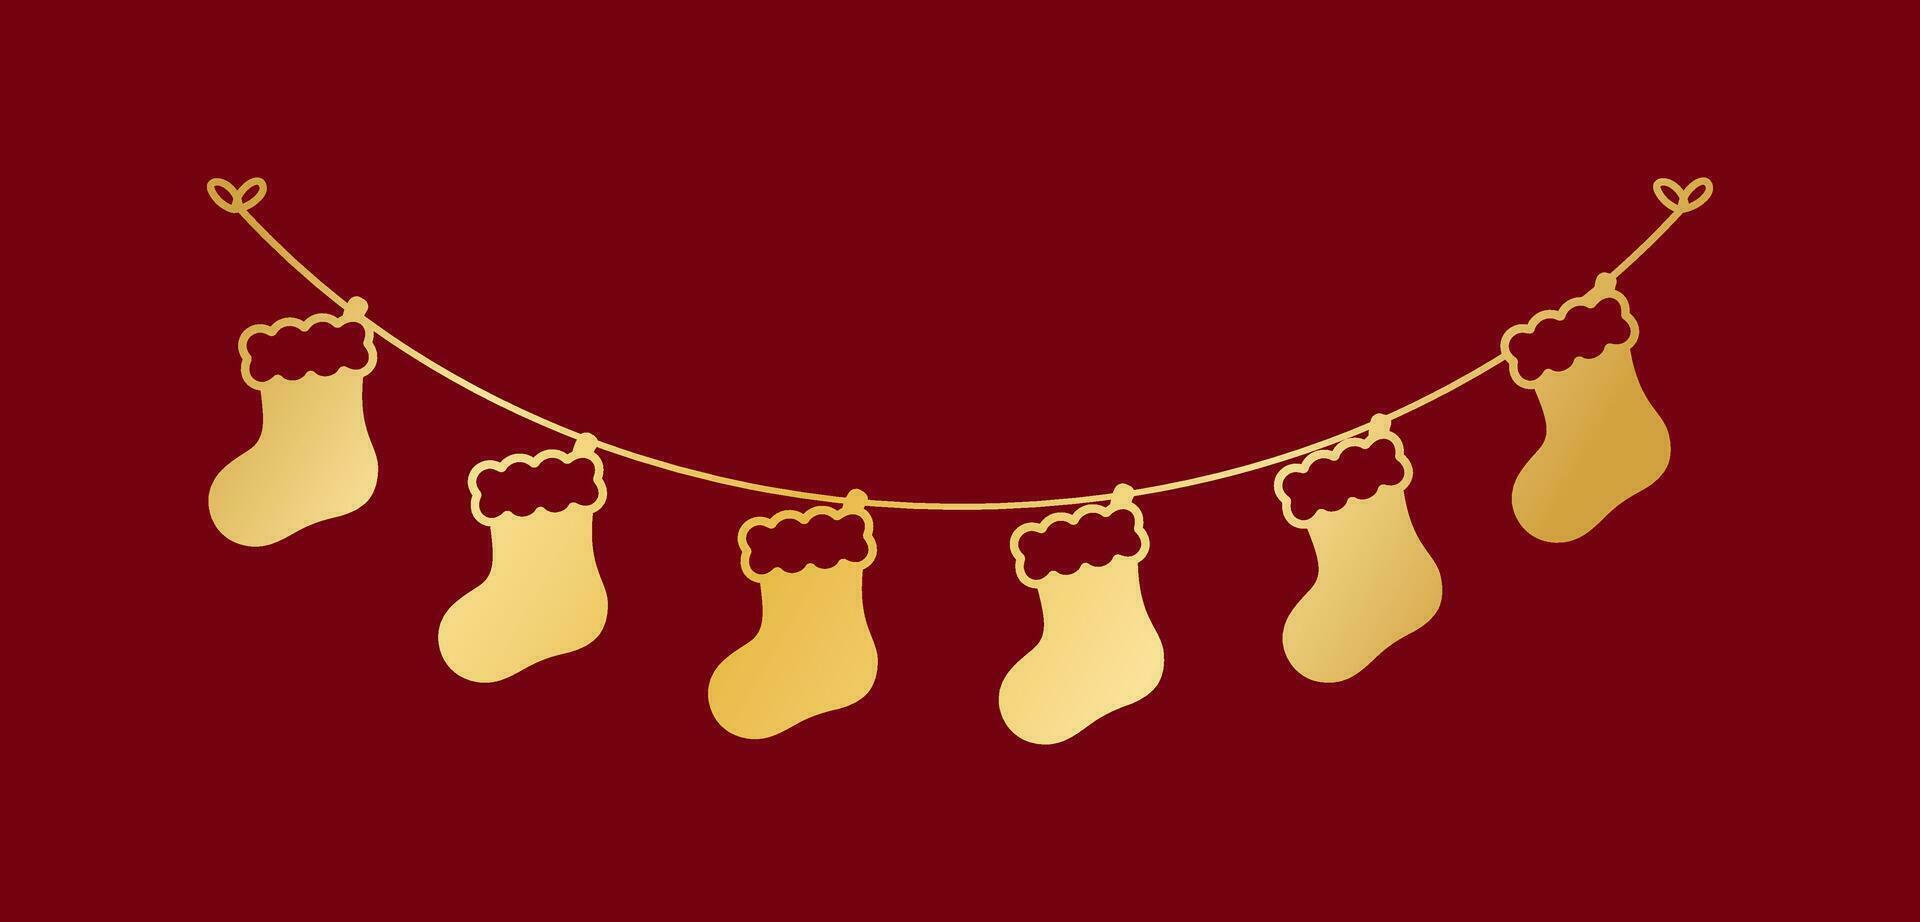 oro Navidad media silueta guirnalda vector ilustración, Navidad calcetines gráficos festivo invierno fiesta temporada verderón